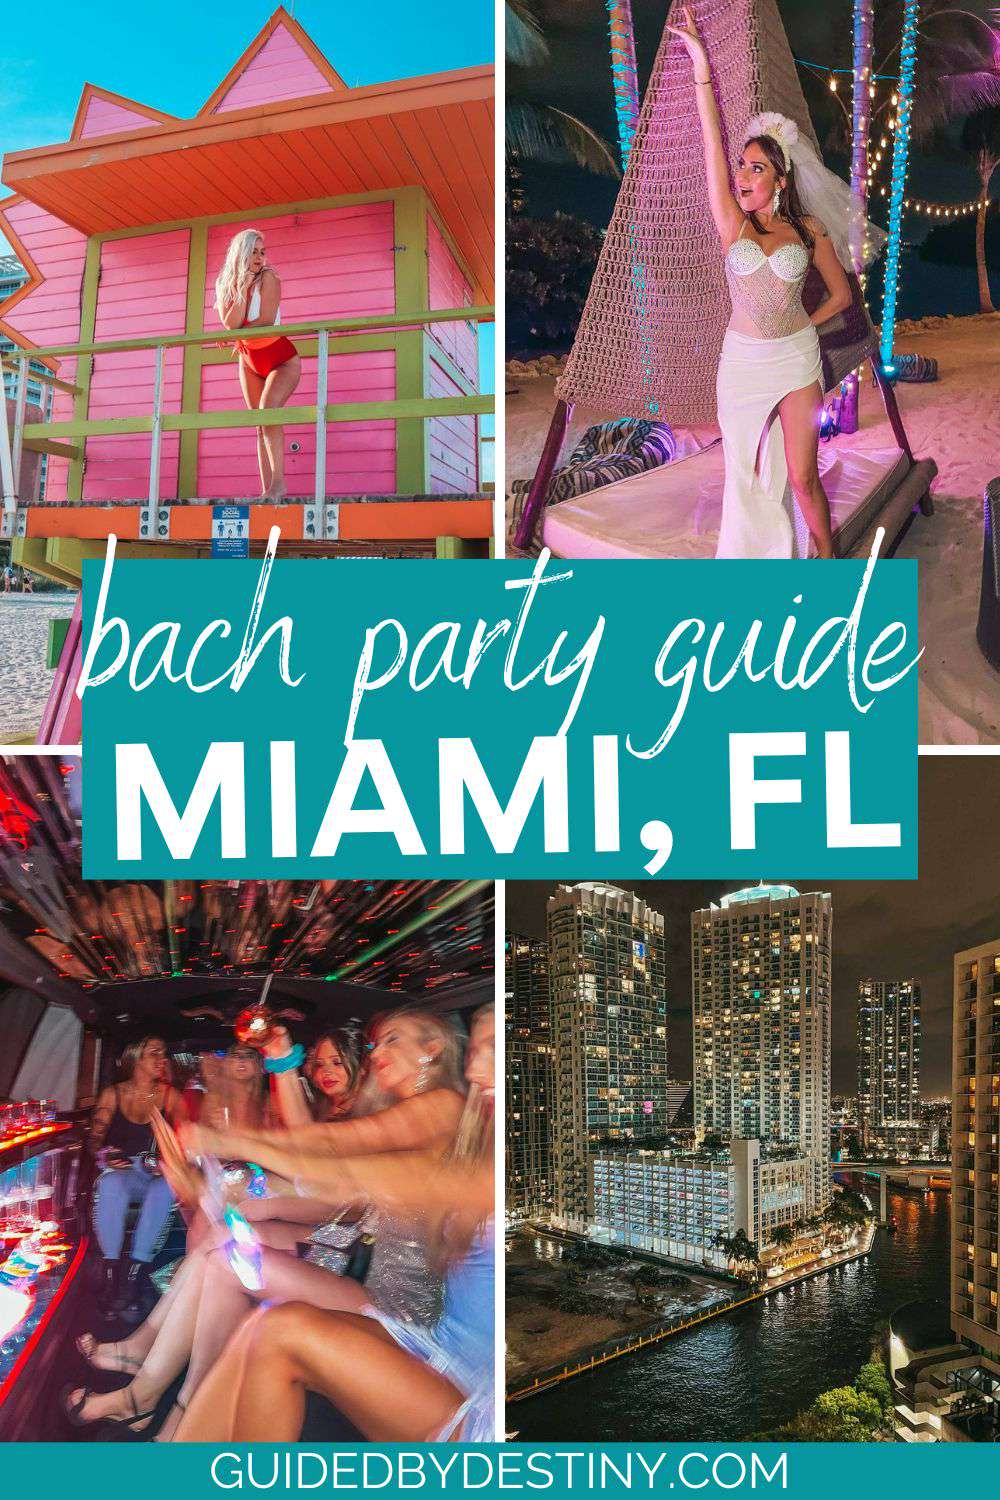 Bach party guide Miami Florida